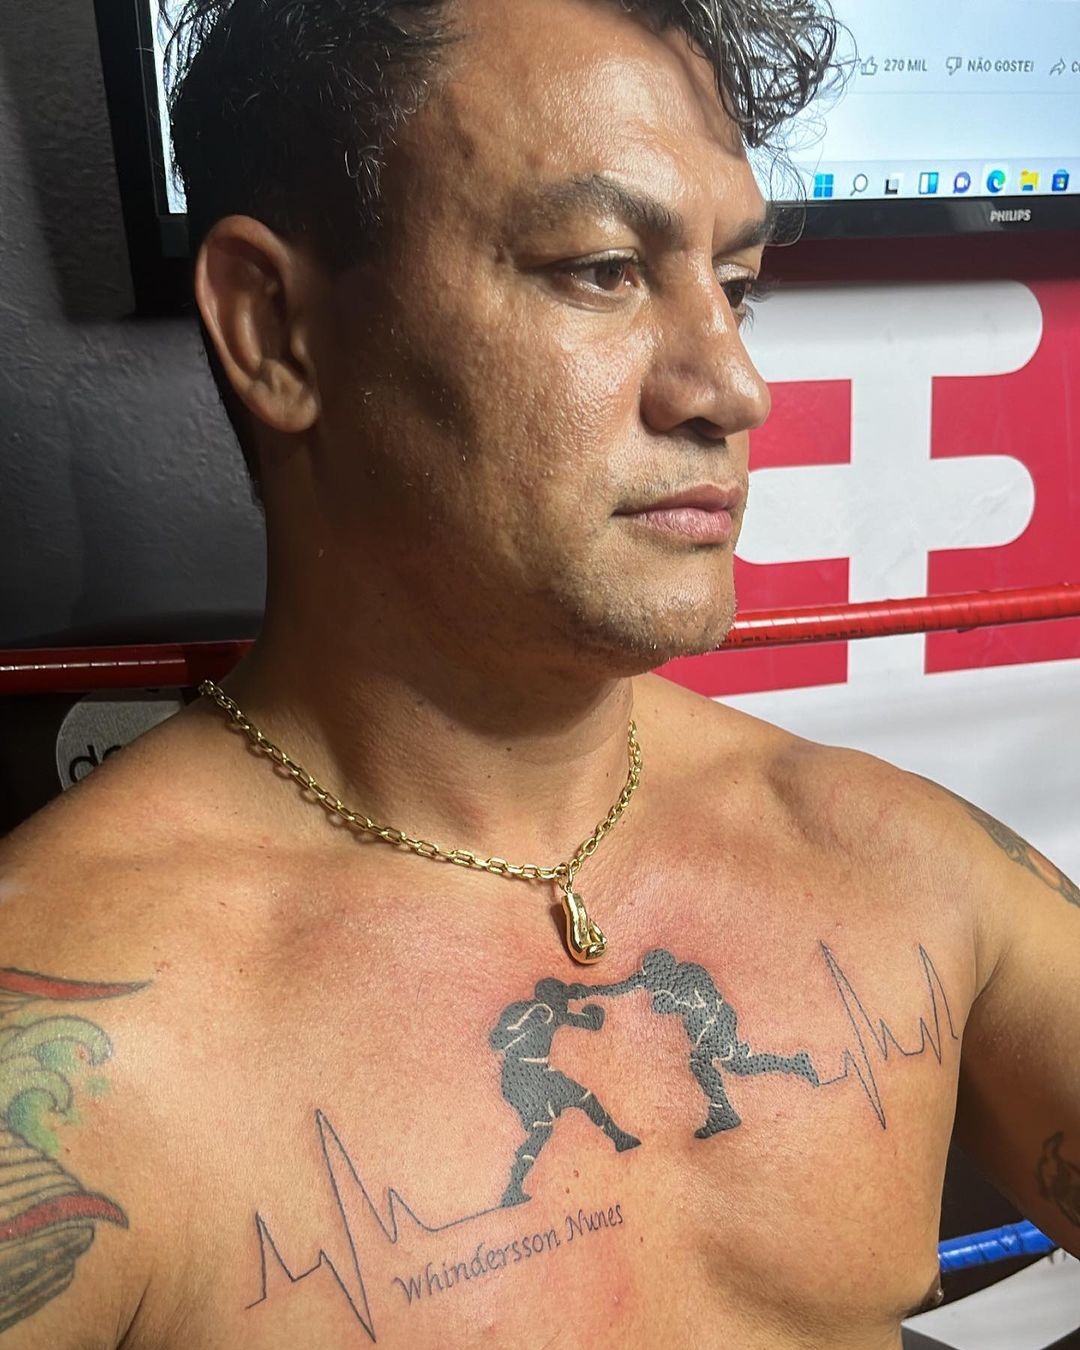 Popó tatua cena de luta com Whindersson (Foto: Reprodução/Instagram)